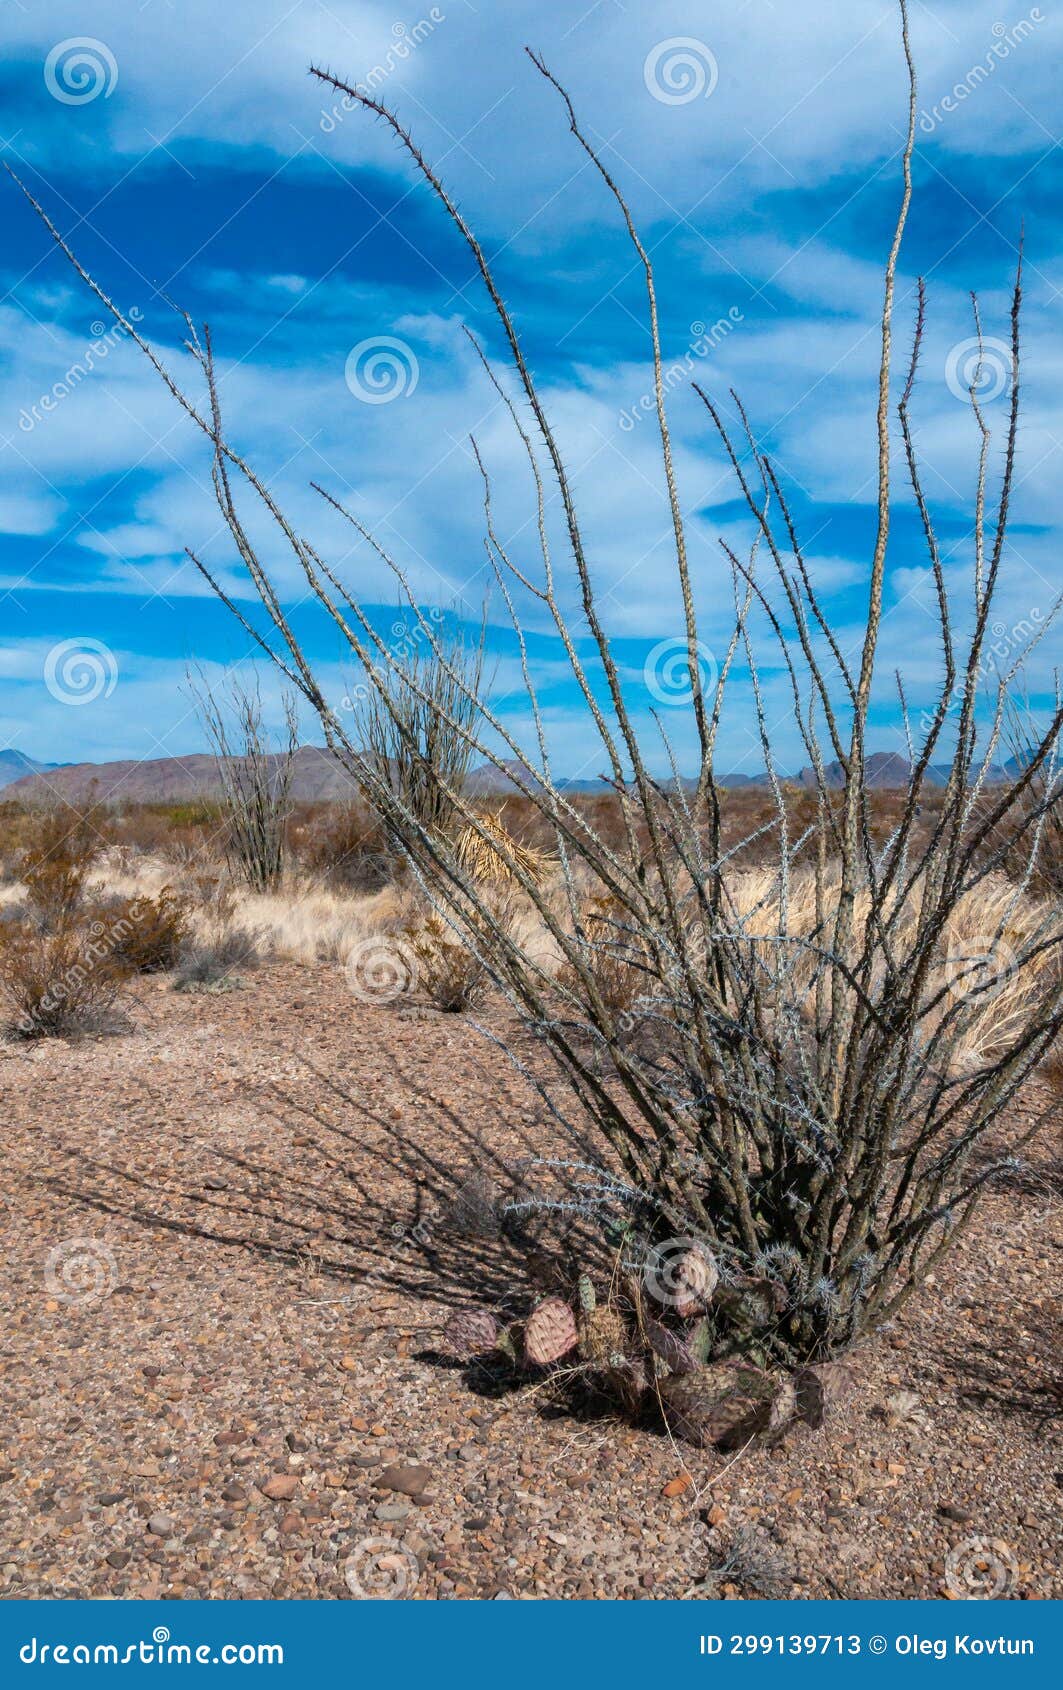 cactus ocotillo plant (fouquieria splendens) in the chihuahuan desert